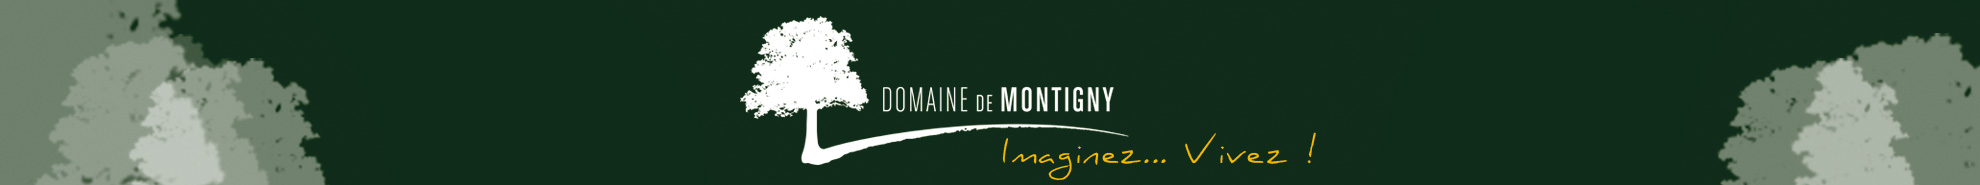 Domaine de Montigny.fr-logo et tétière